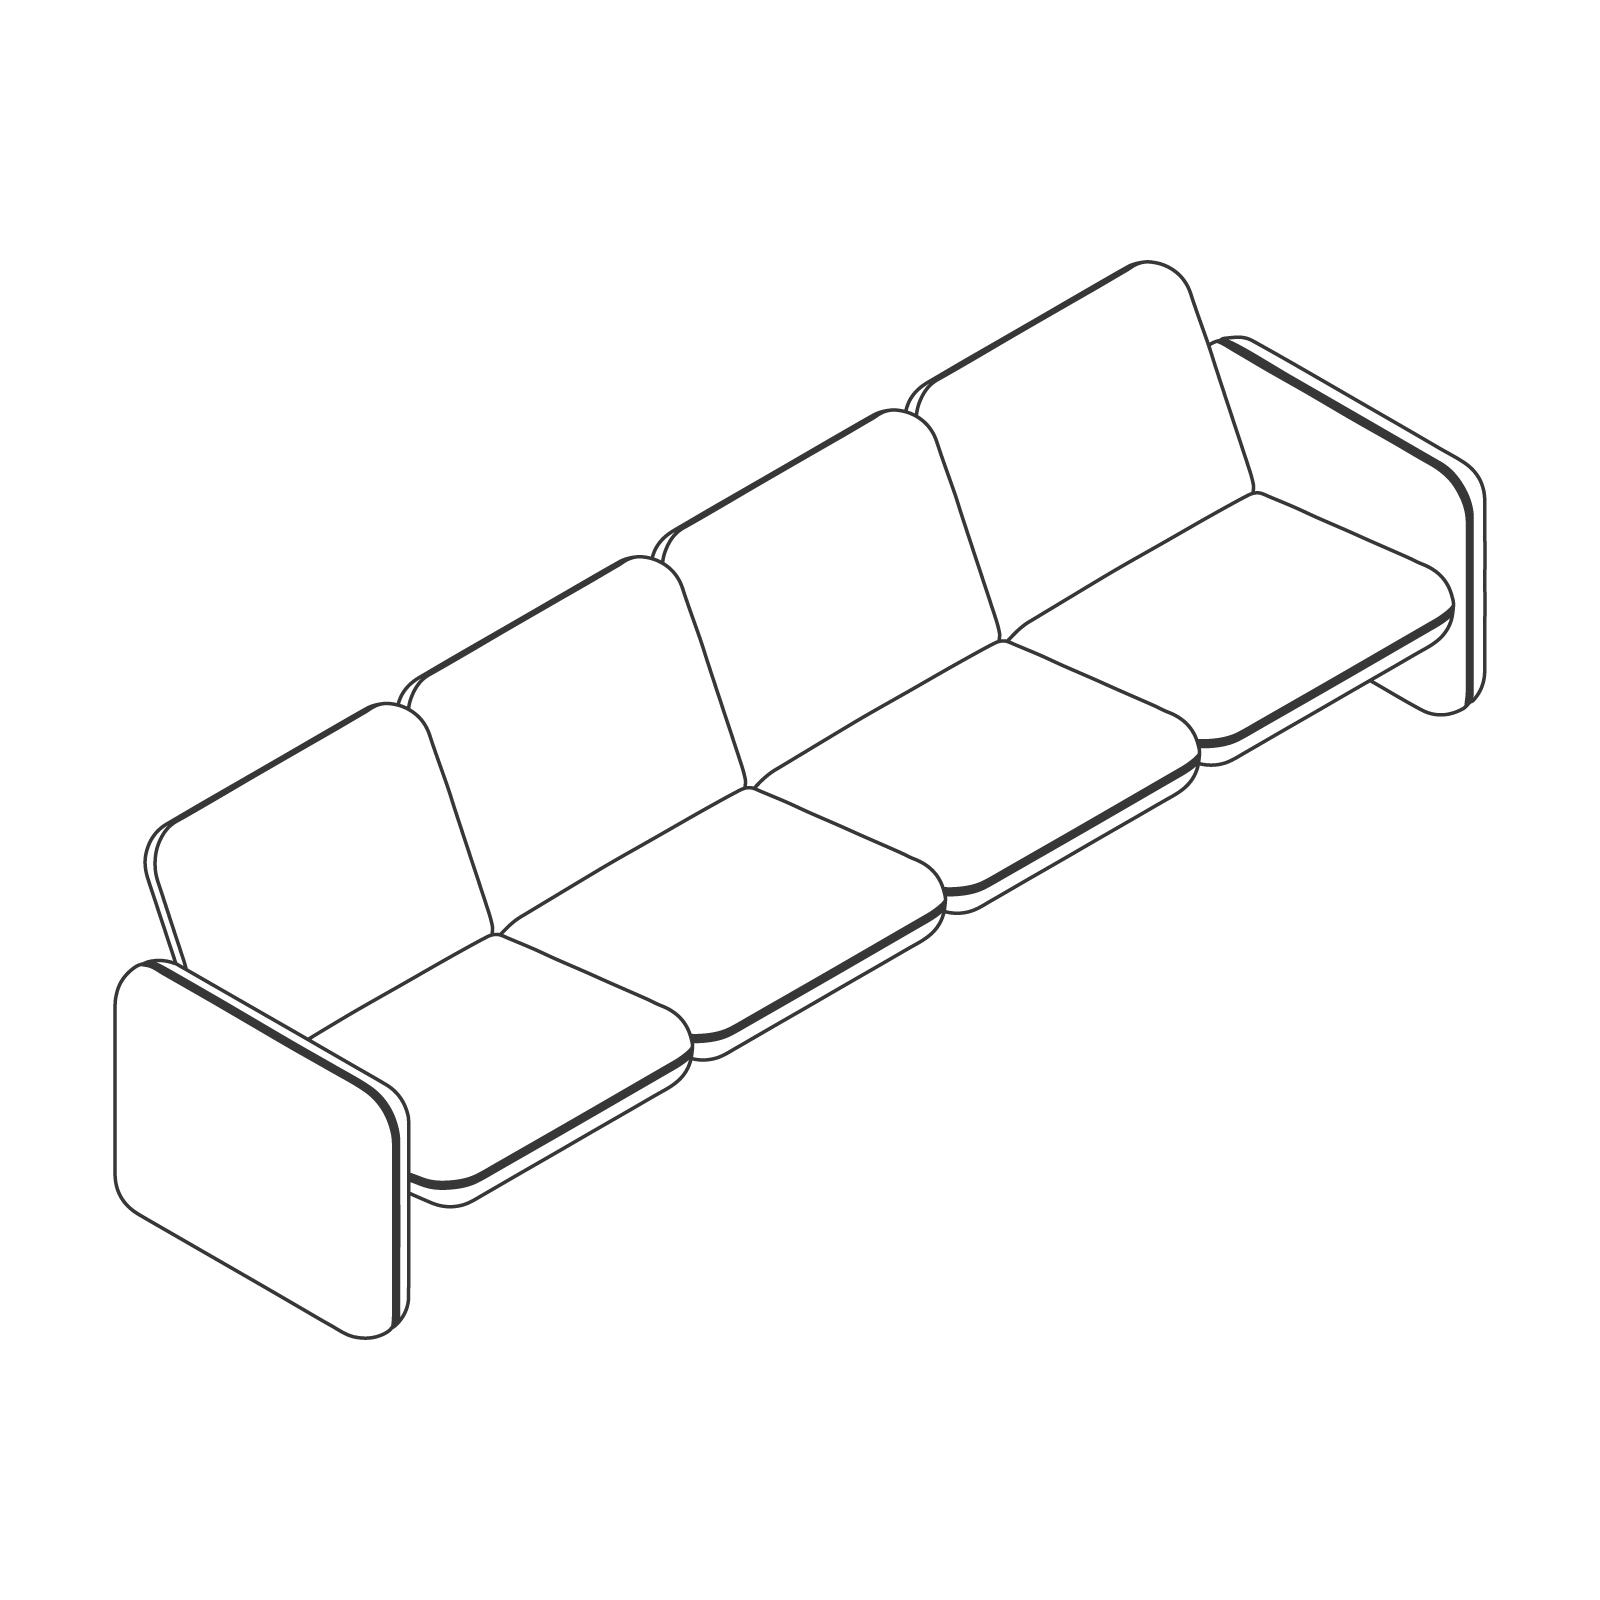 Dibujo en líneas - Conjunto de sofás modulares Wilkes – 4 asientos